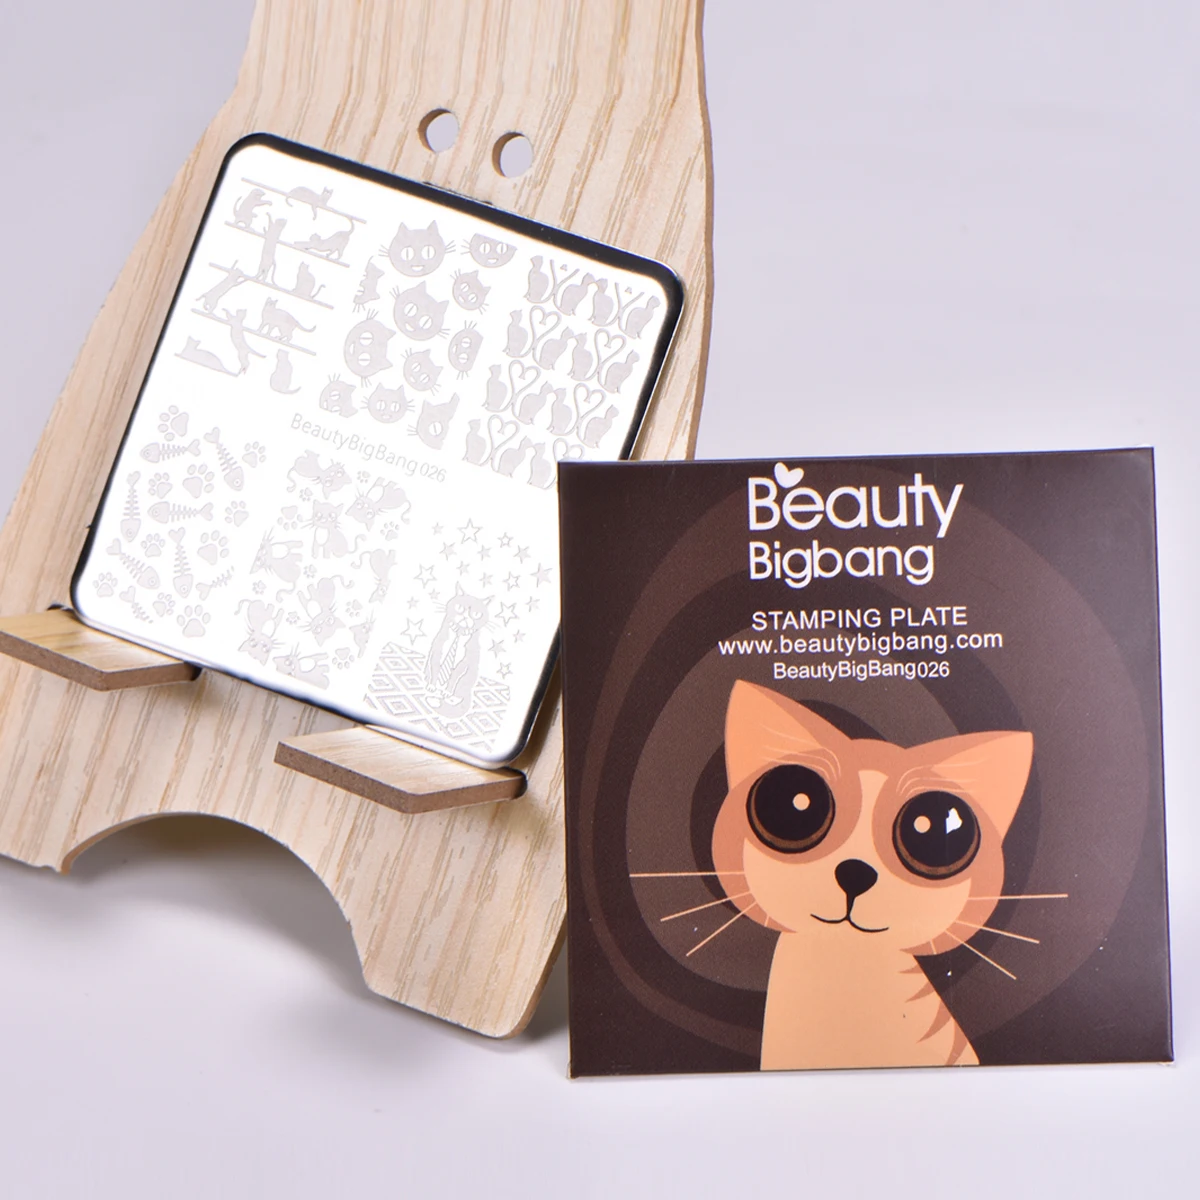 BeautyBigBang штамповочная пластина 6*12 см для дизайна ногтей Кошка Собака Рыба изображение формы Винтаж Дизайн ногтей штамп шаблон пластина BBB XL-008